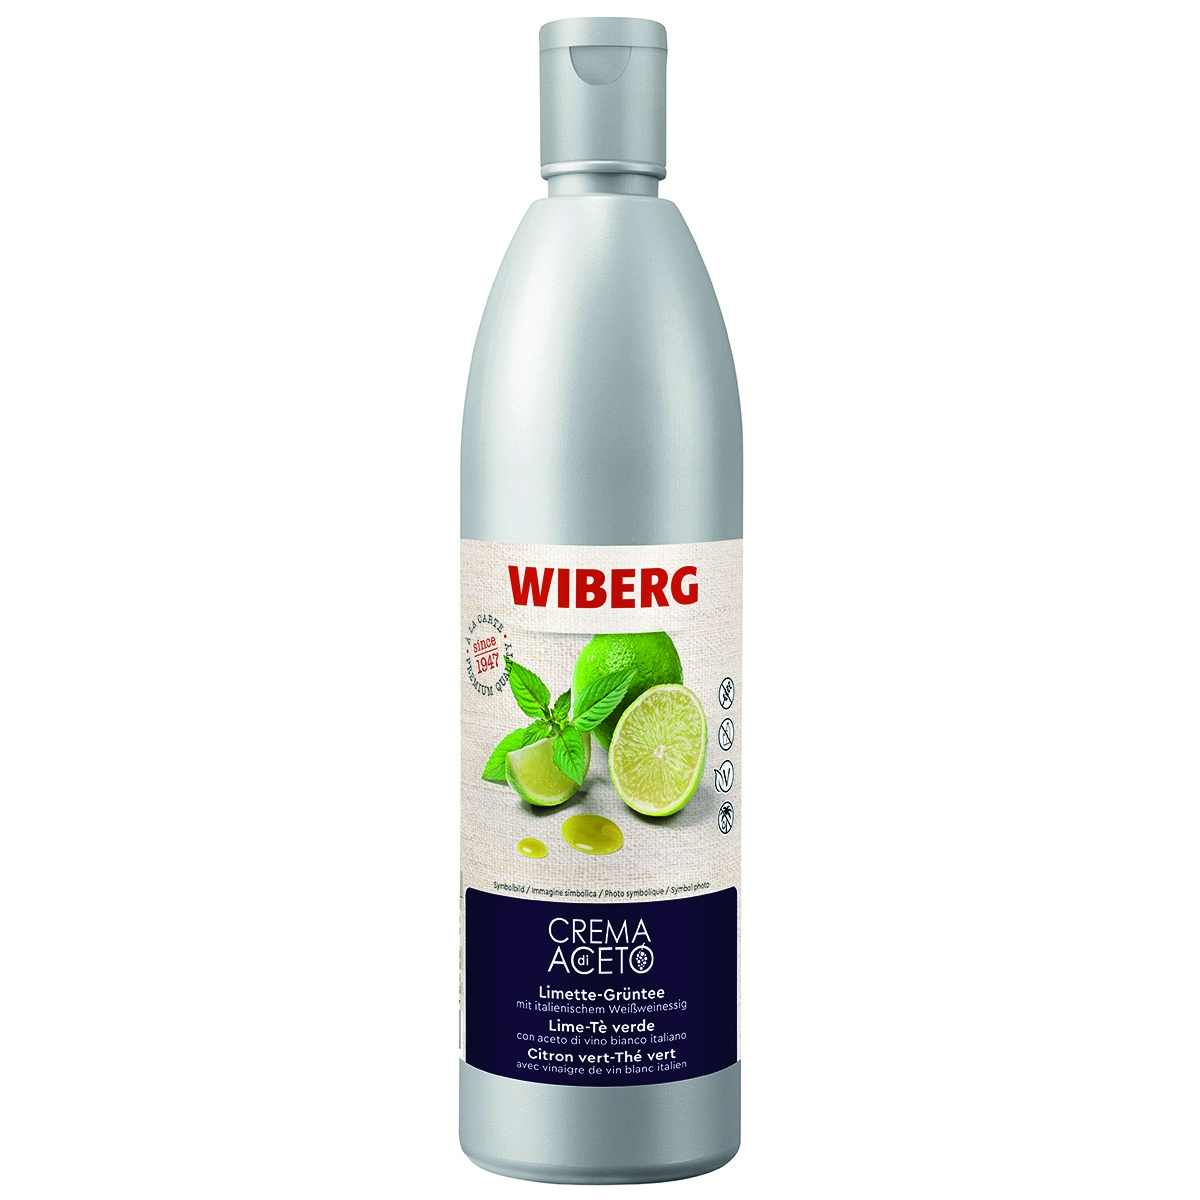 WIBERG Crema di Aceto Limette-Grüntee